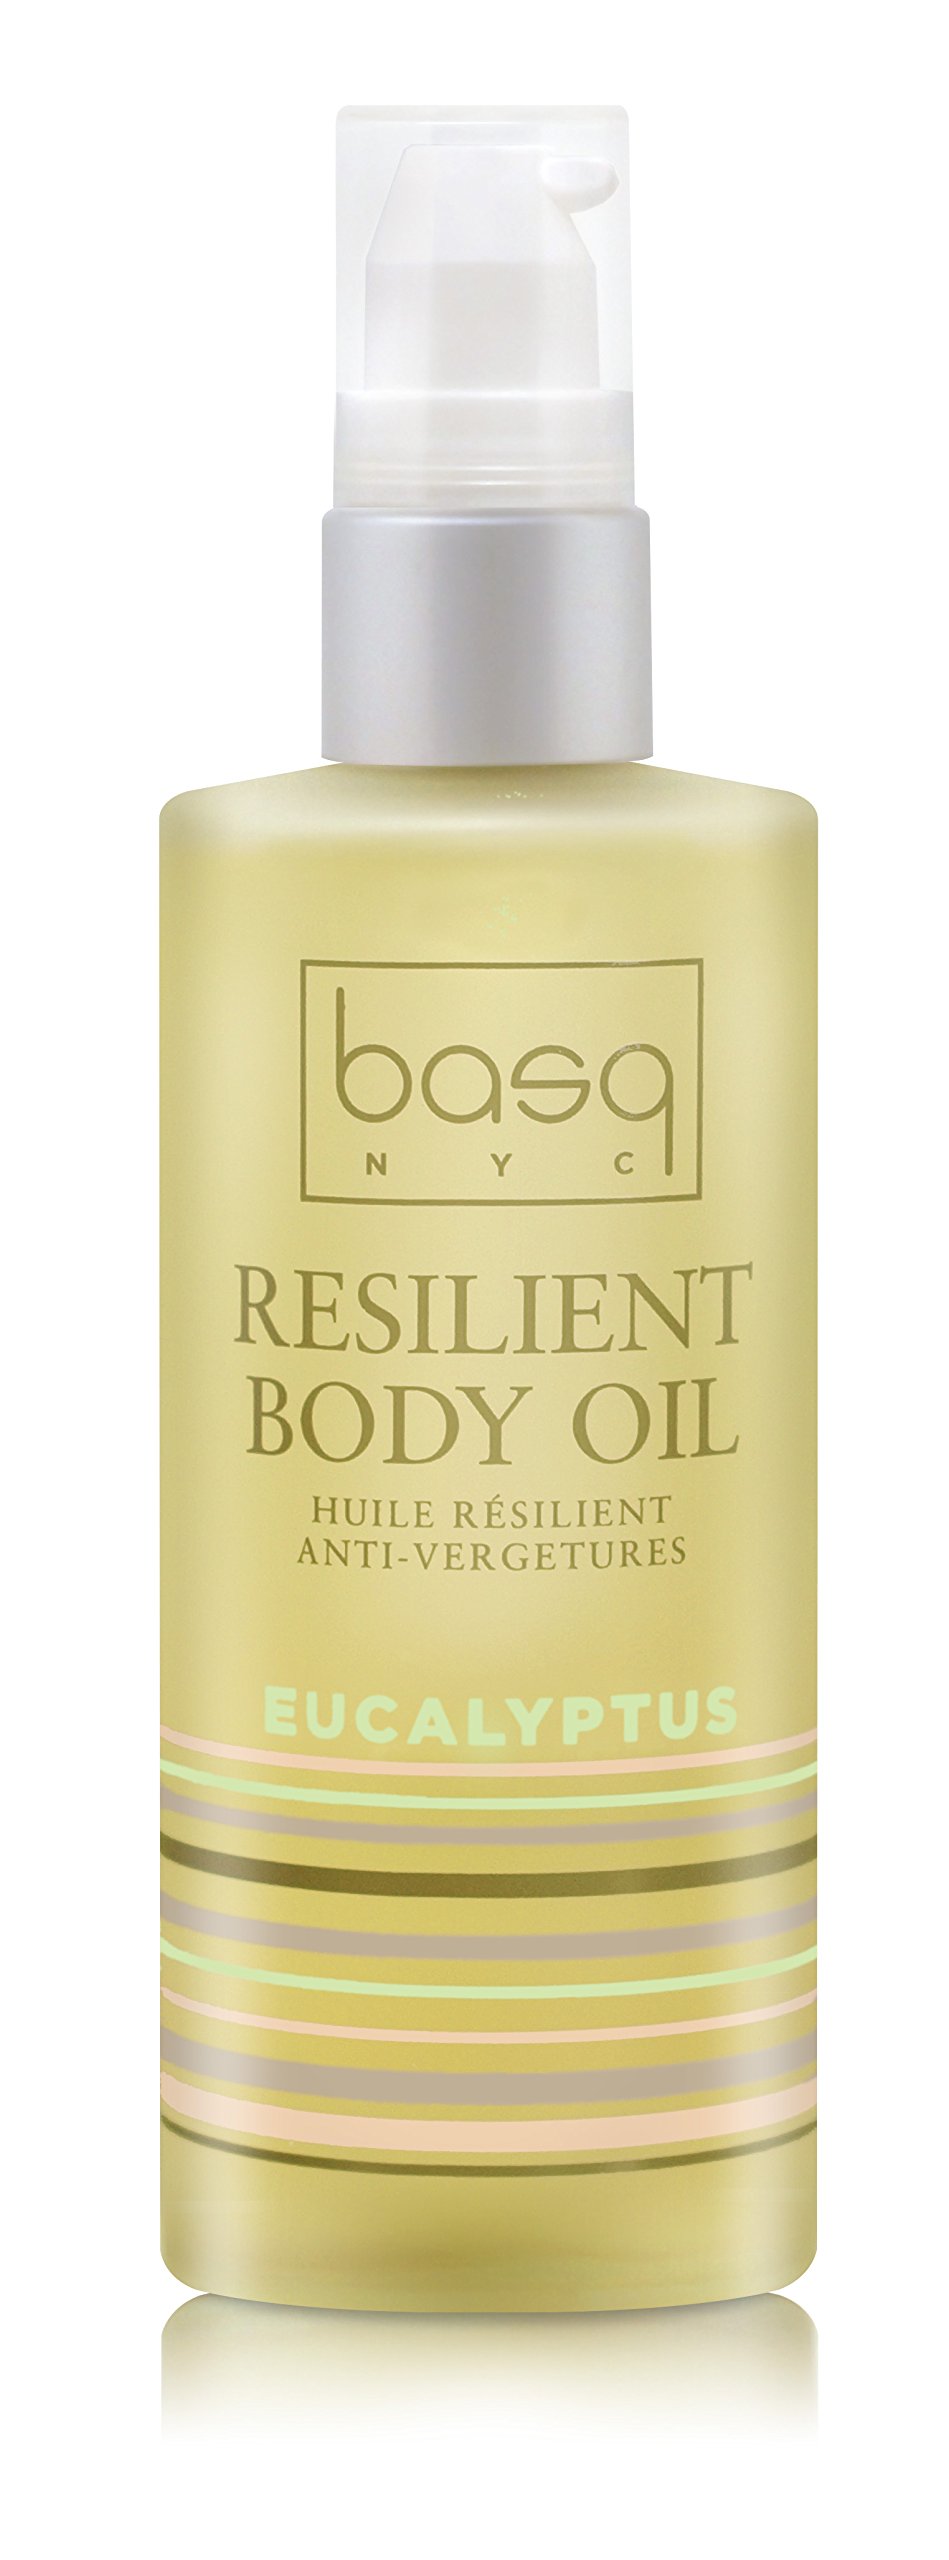 Basq Skin Care Resilient Body Stretch Mark Oil, Eucalyptus, 4 Fluid Ounce